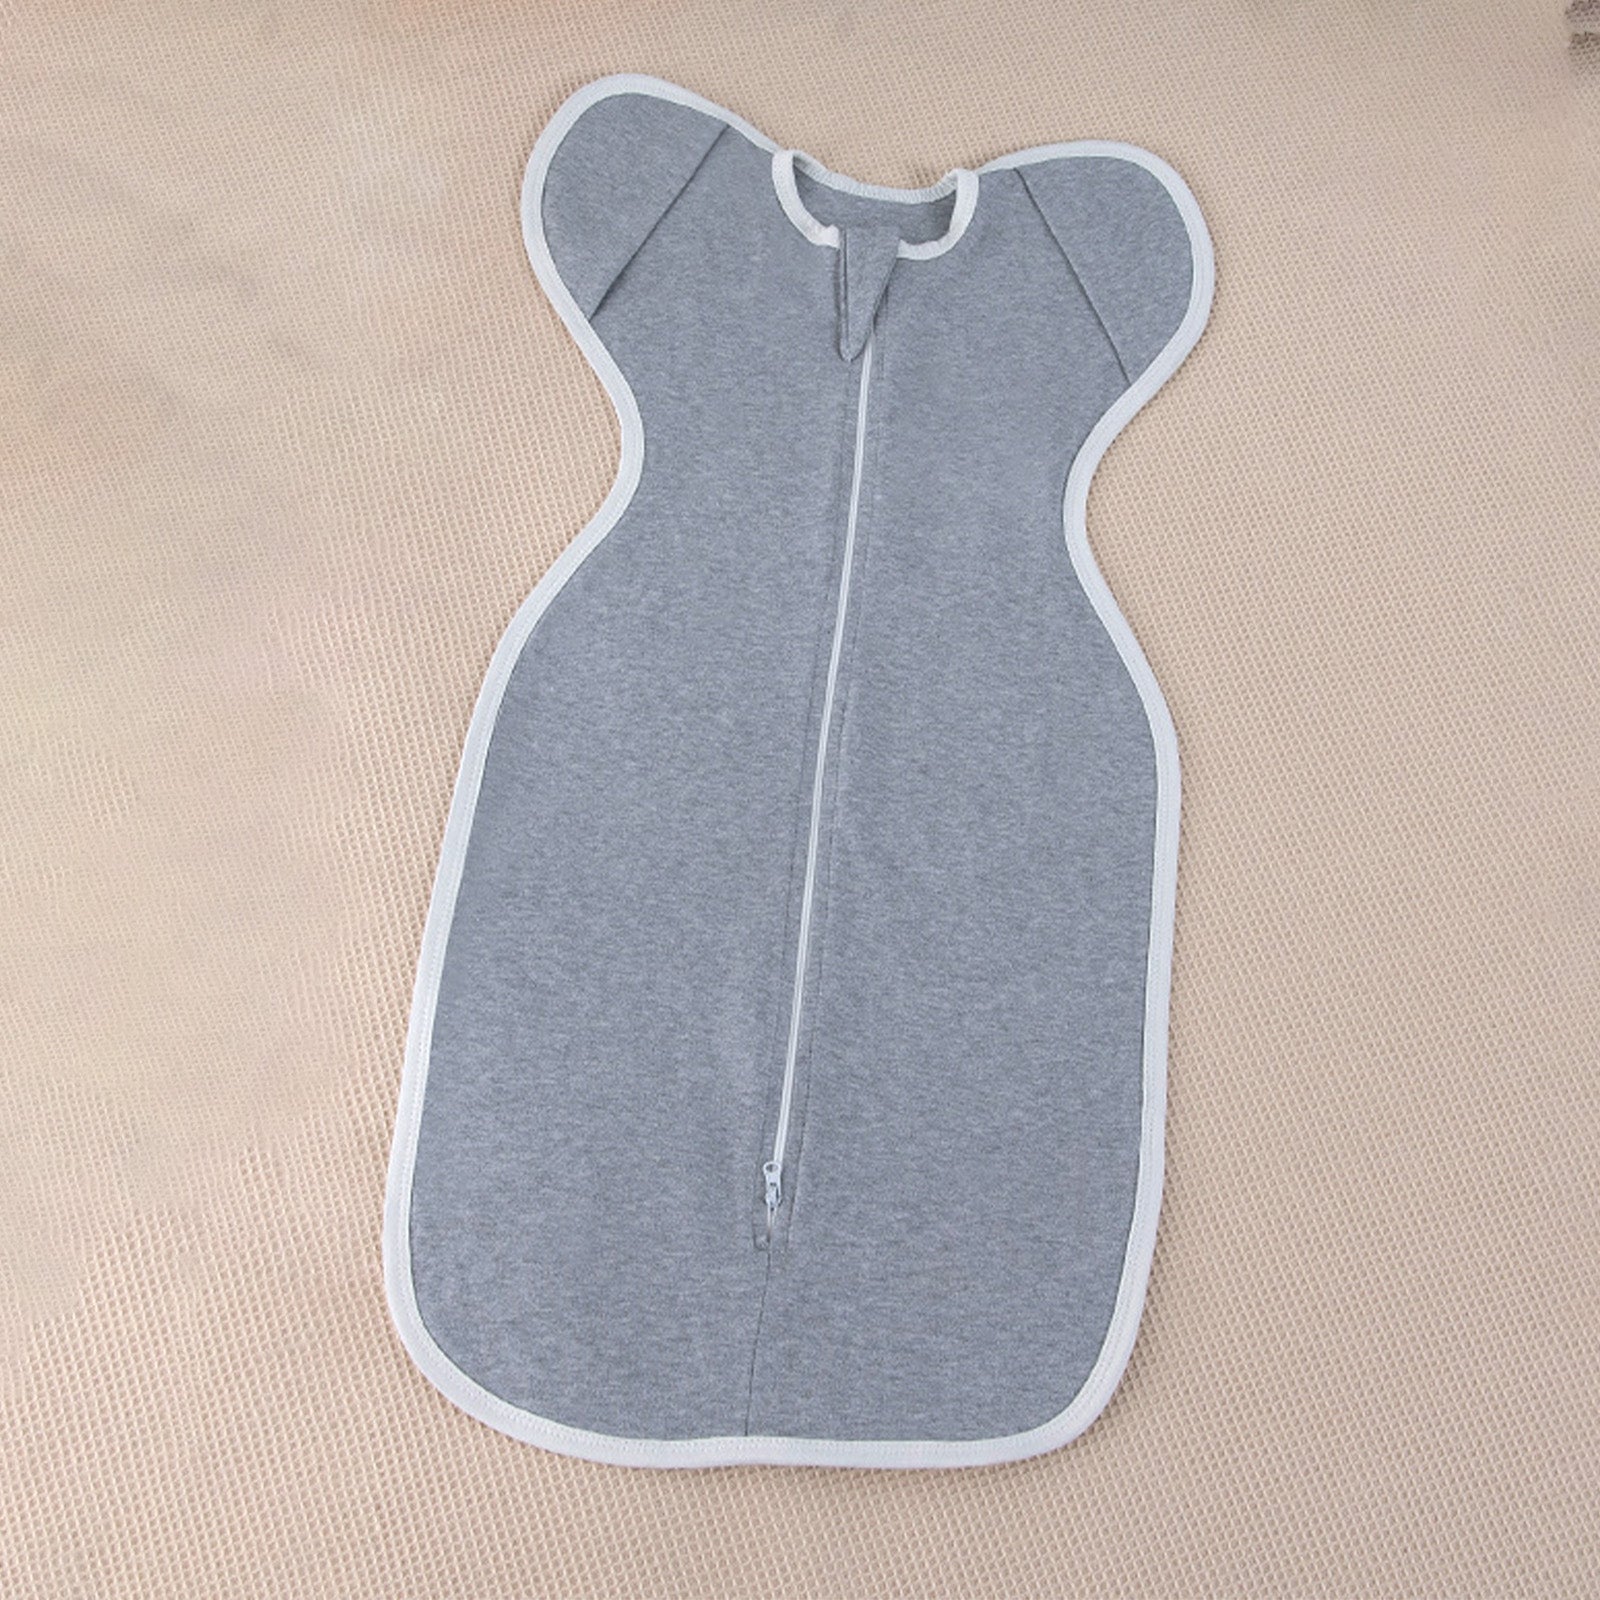 Tiny cuddling Sleepsack Swaddle,100% Cotton, Anti-startle Design, TOG 0.5, Large, 6-9 Months, 35*80cm - babeliobaby